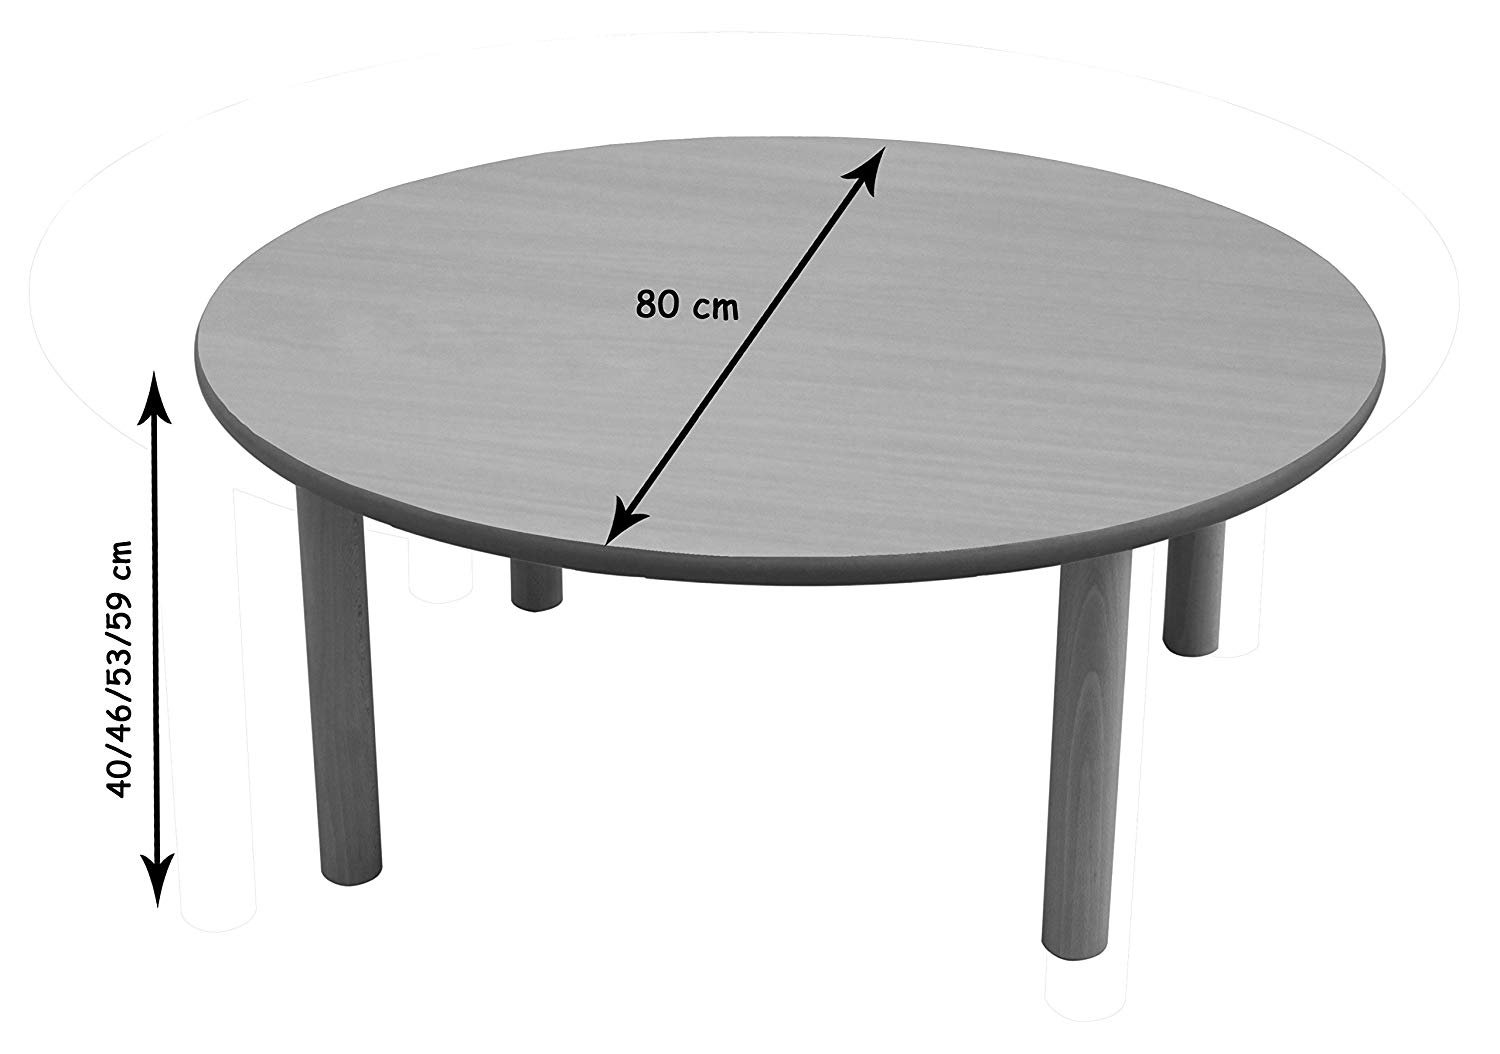 Стол высотой 100 см. Круглый стол Орион диаметр 120. Диаметр круглого стола. Овальный столик. Круглый стол Размеры.